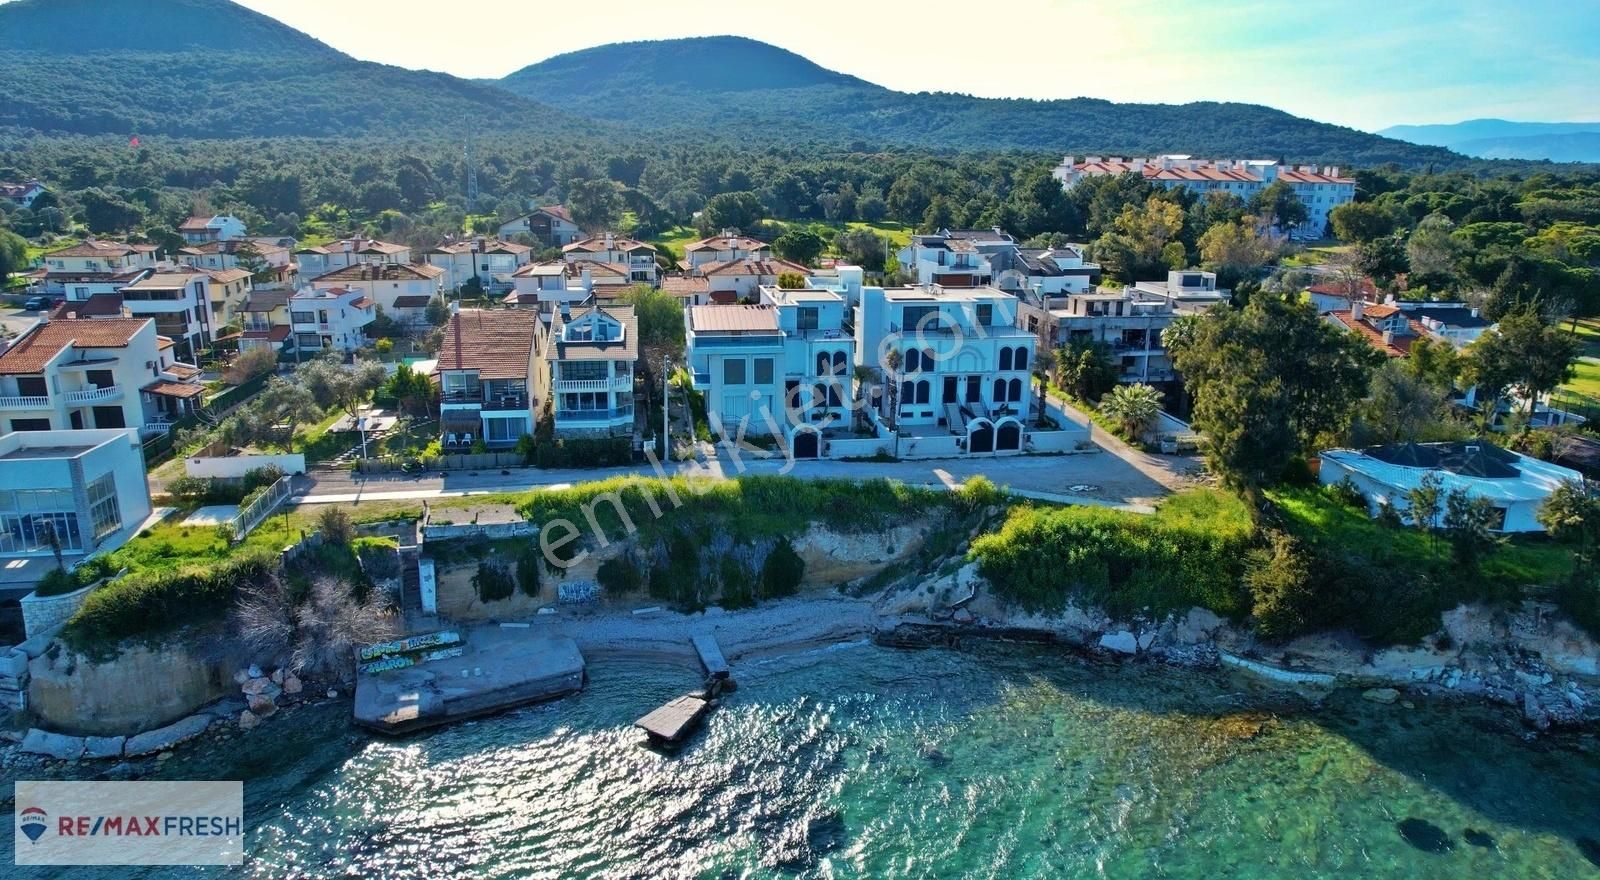 Urla Güvendik Denize Sıfır Satılık Villa Urla Çeşmealtı'nda Denize Sıfır 6+1 Satılık Lüks Villa